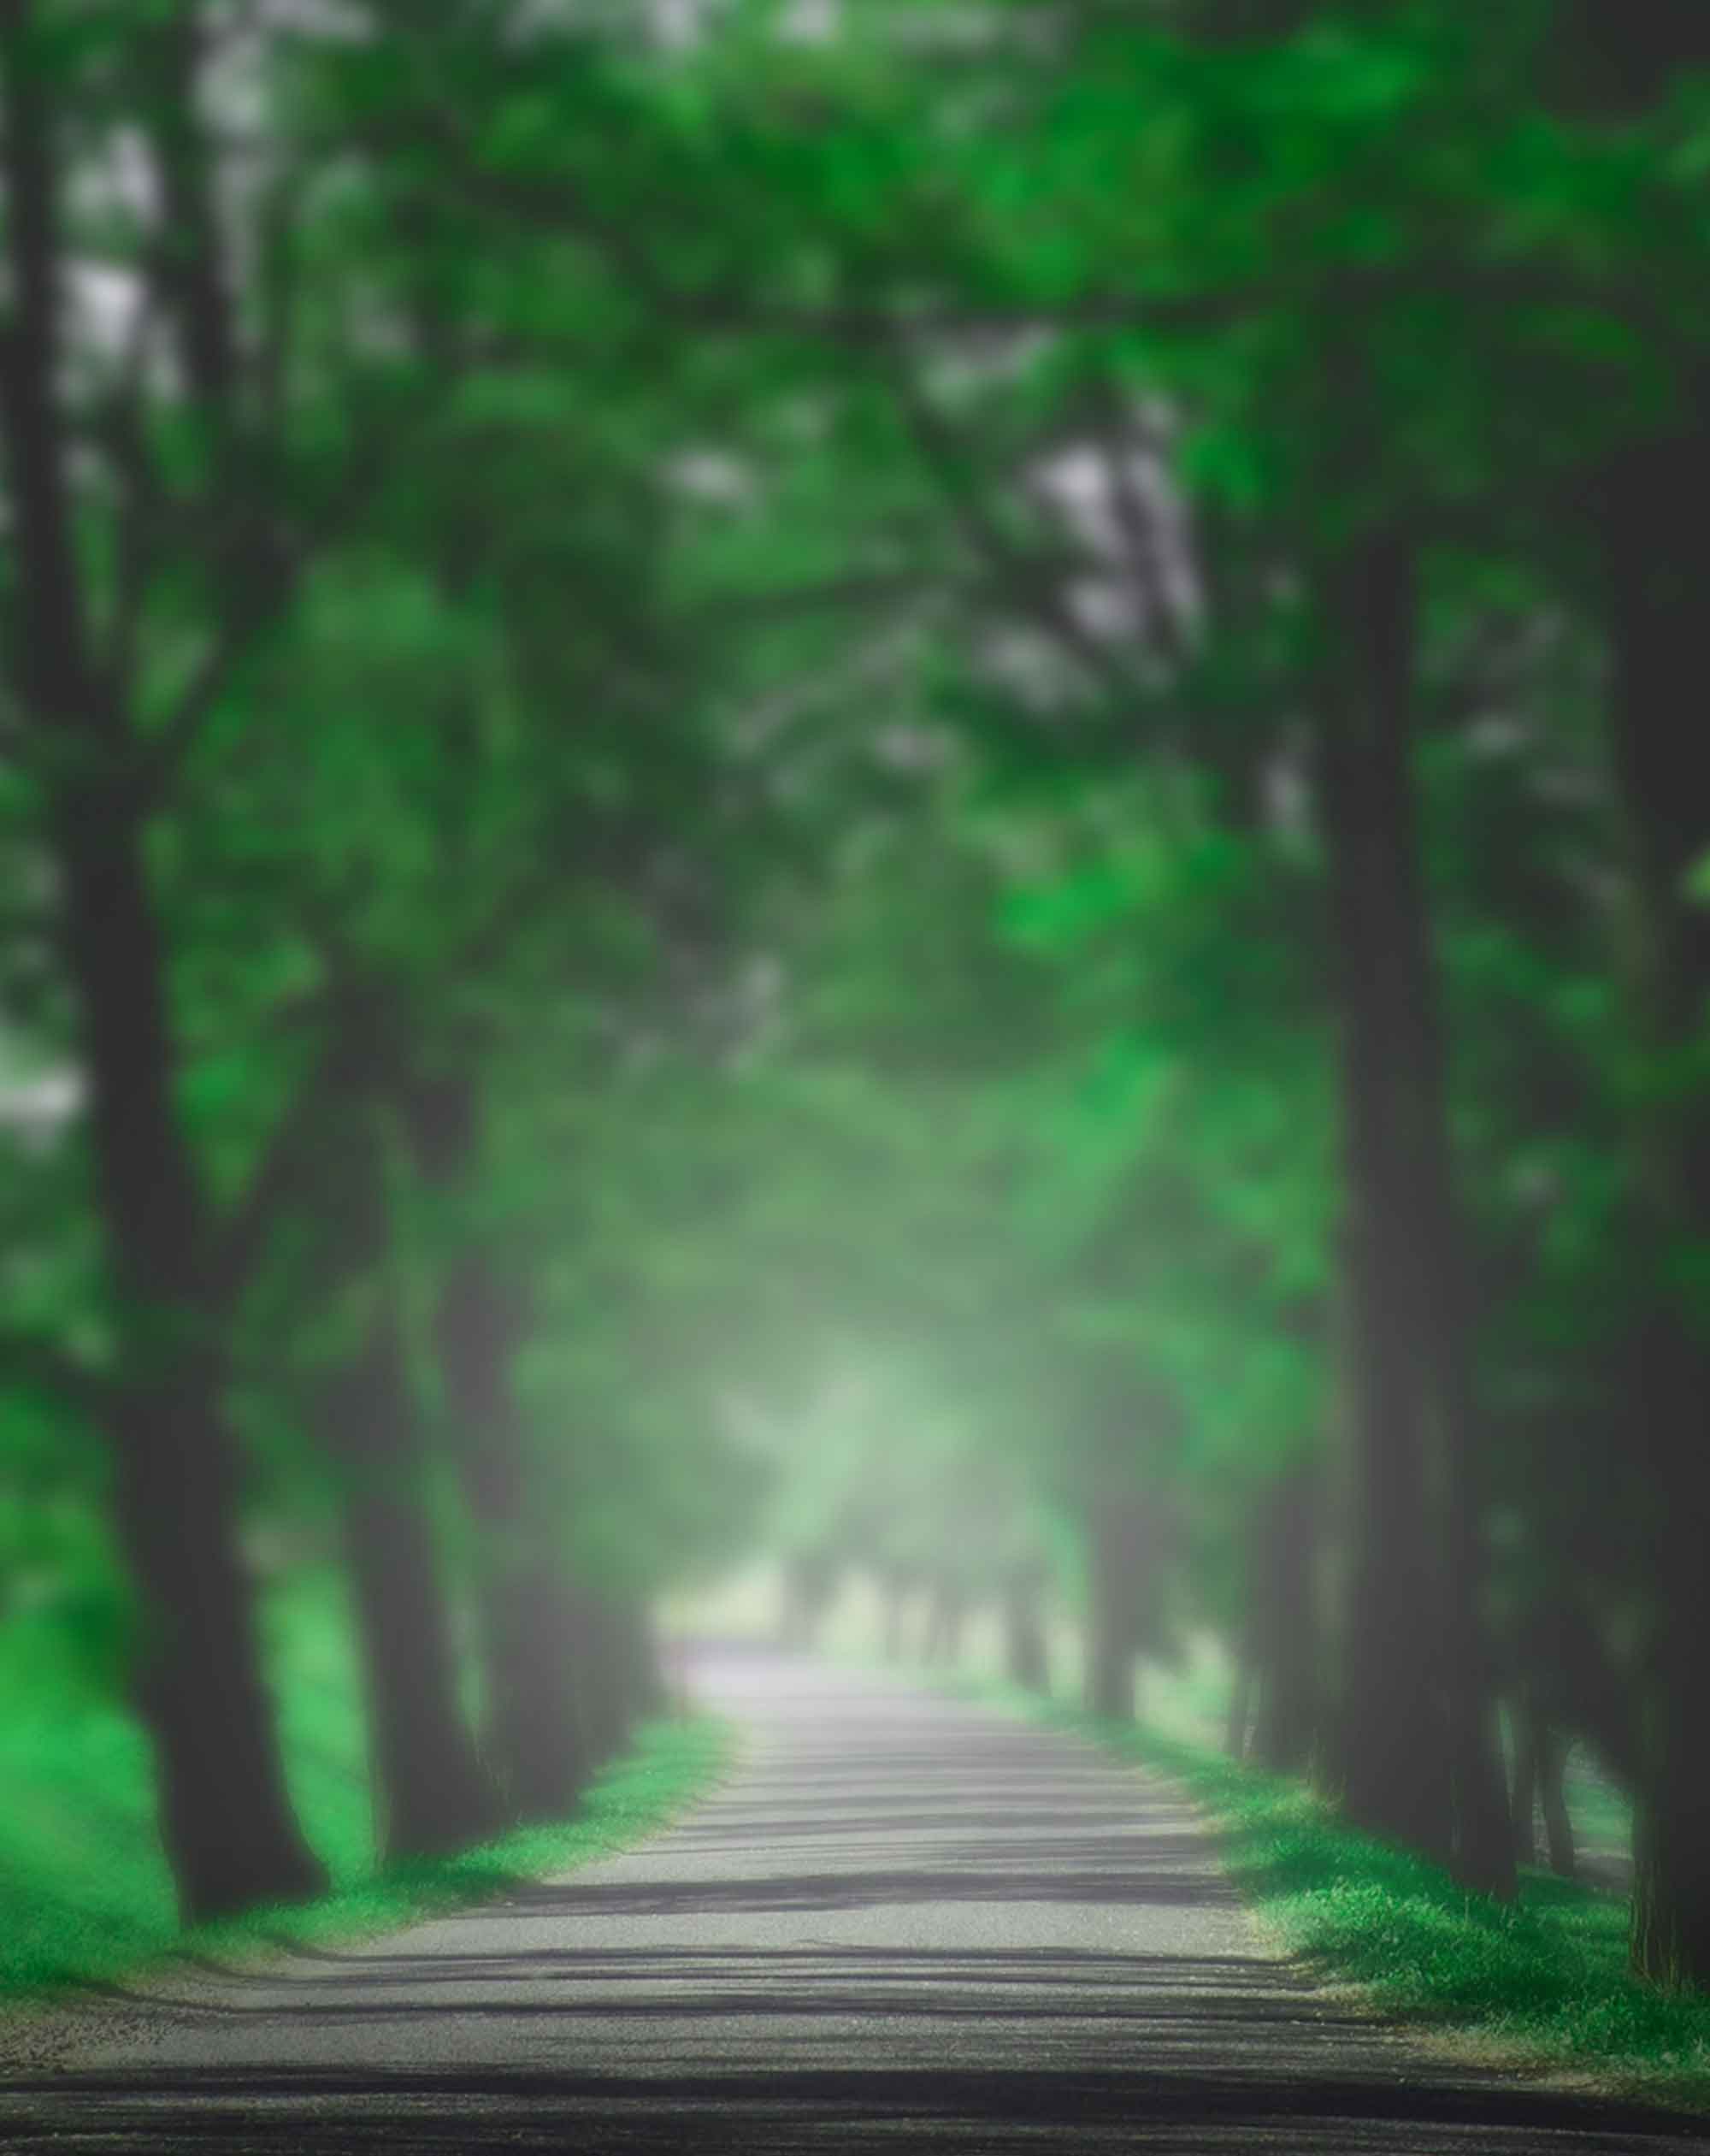 Bộ ảnh rừng nền đường mờ sẽ mang đến cho bạn trải nghiệm tuyệt vời với cảm giác rất gần gũi với thiên nhiên và đưa bạn tới những cung đường thiên nhiên hoang sơ xanh ngát.